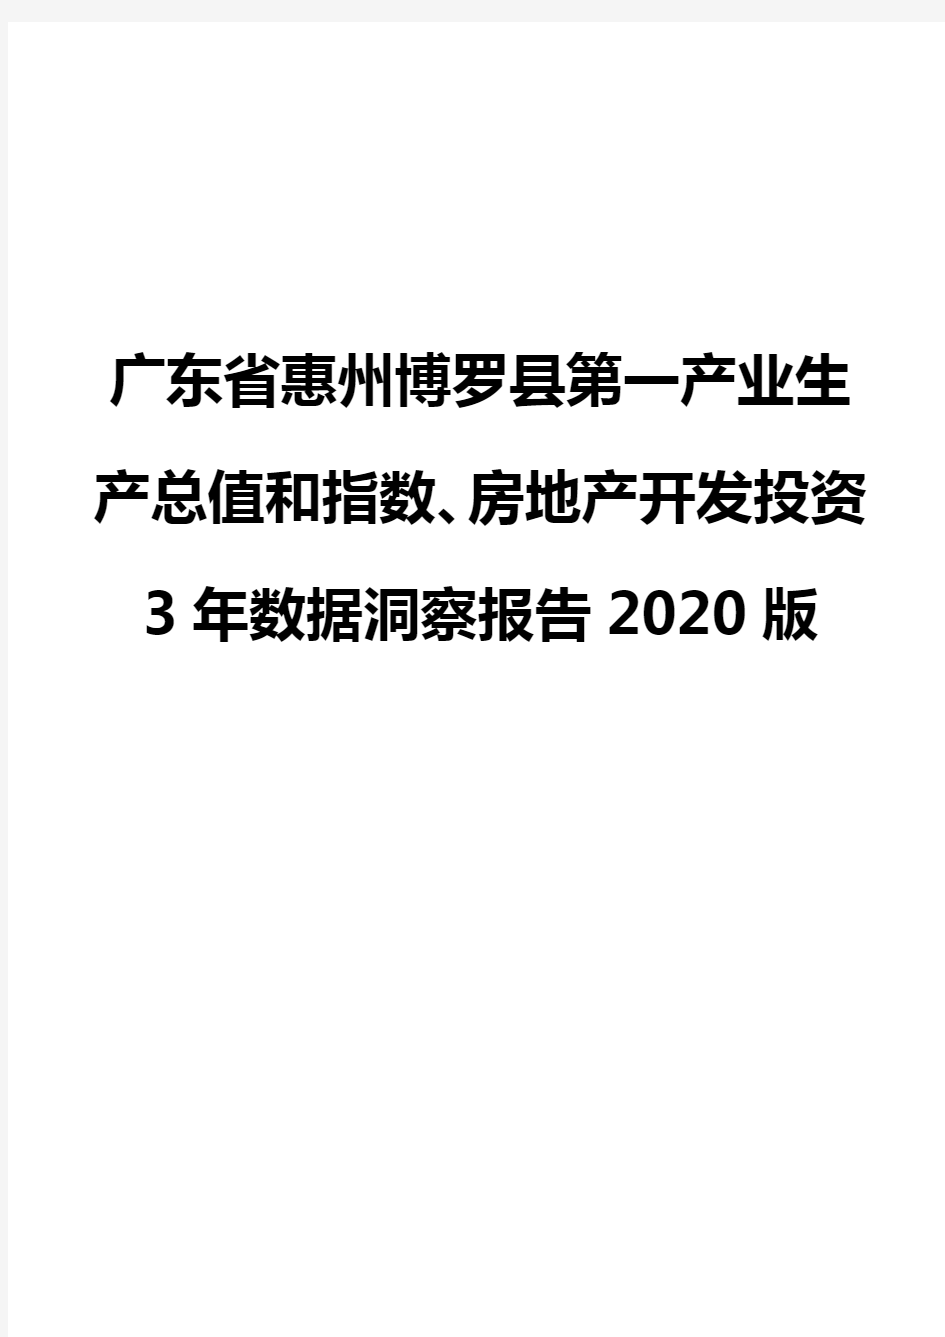 广东省惠州博罗县第一产业生产总值和指数、房地产开发投资3年数据洞察报告2020版